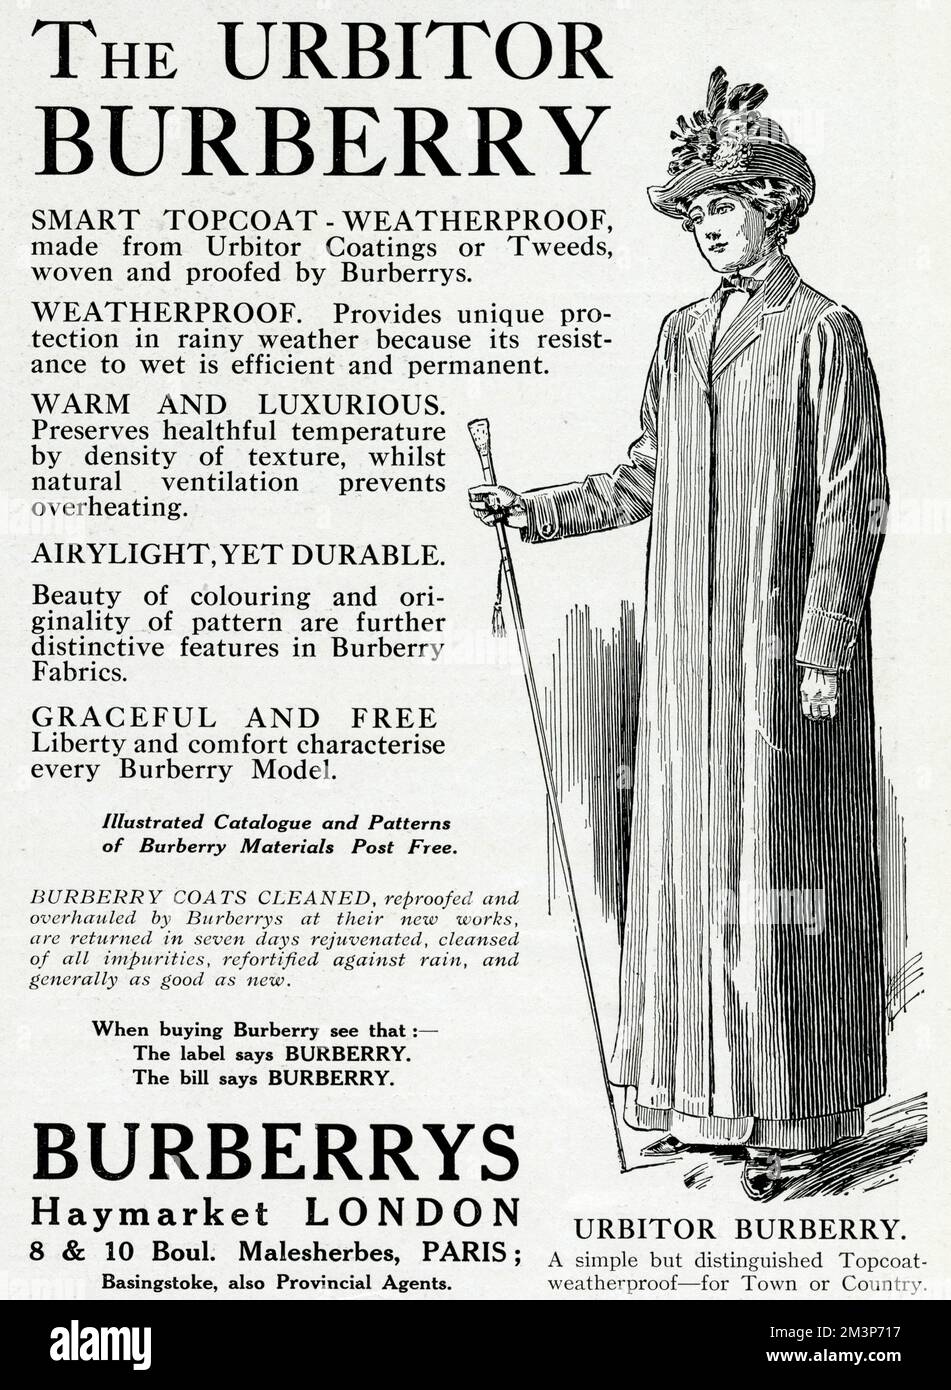 Intelligente, durchgehende wetterfeste Deckschicht aus Urbitor-Beschichtung oder Tweed. Bietet Schutz bei Regen, da die Nassbeständigkeit effizient und dauerhaft ist. 1913 Stockfoto